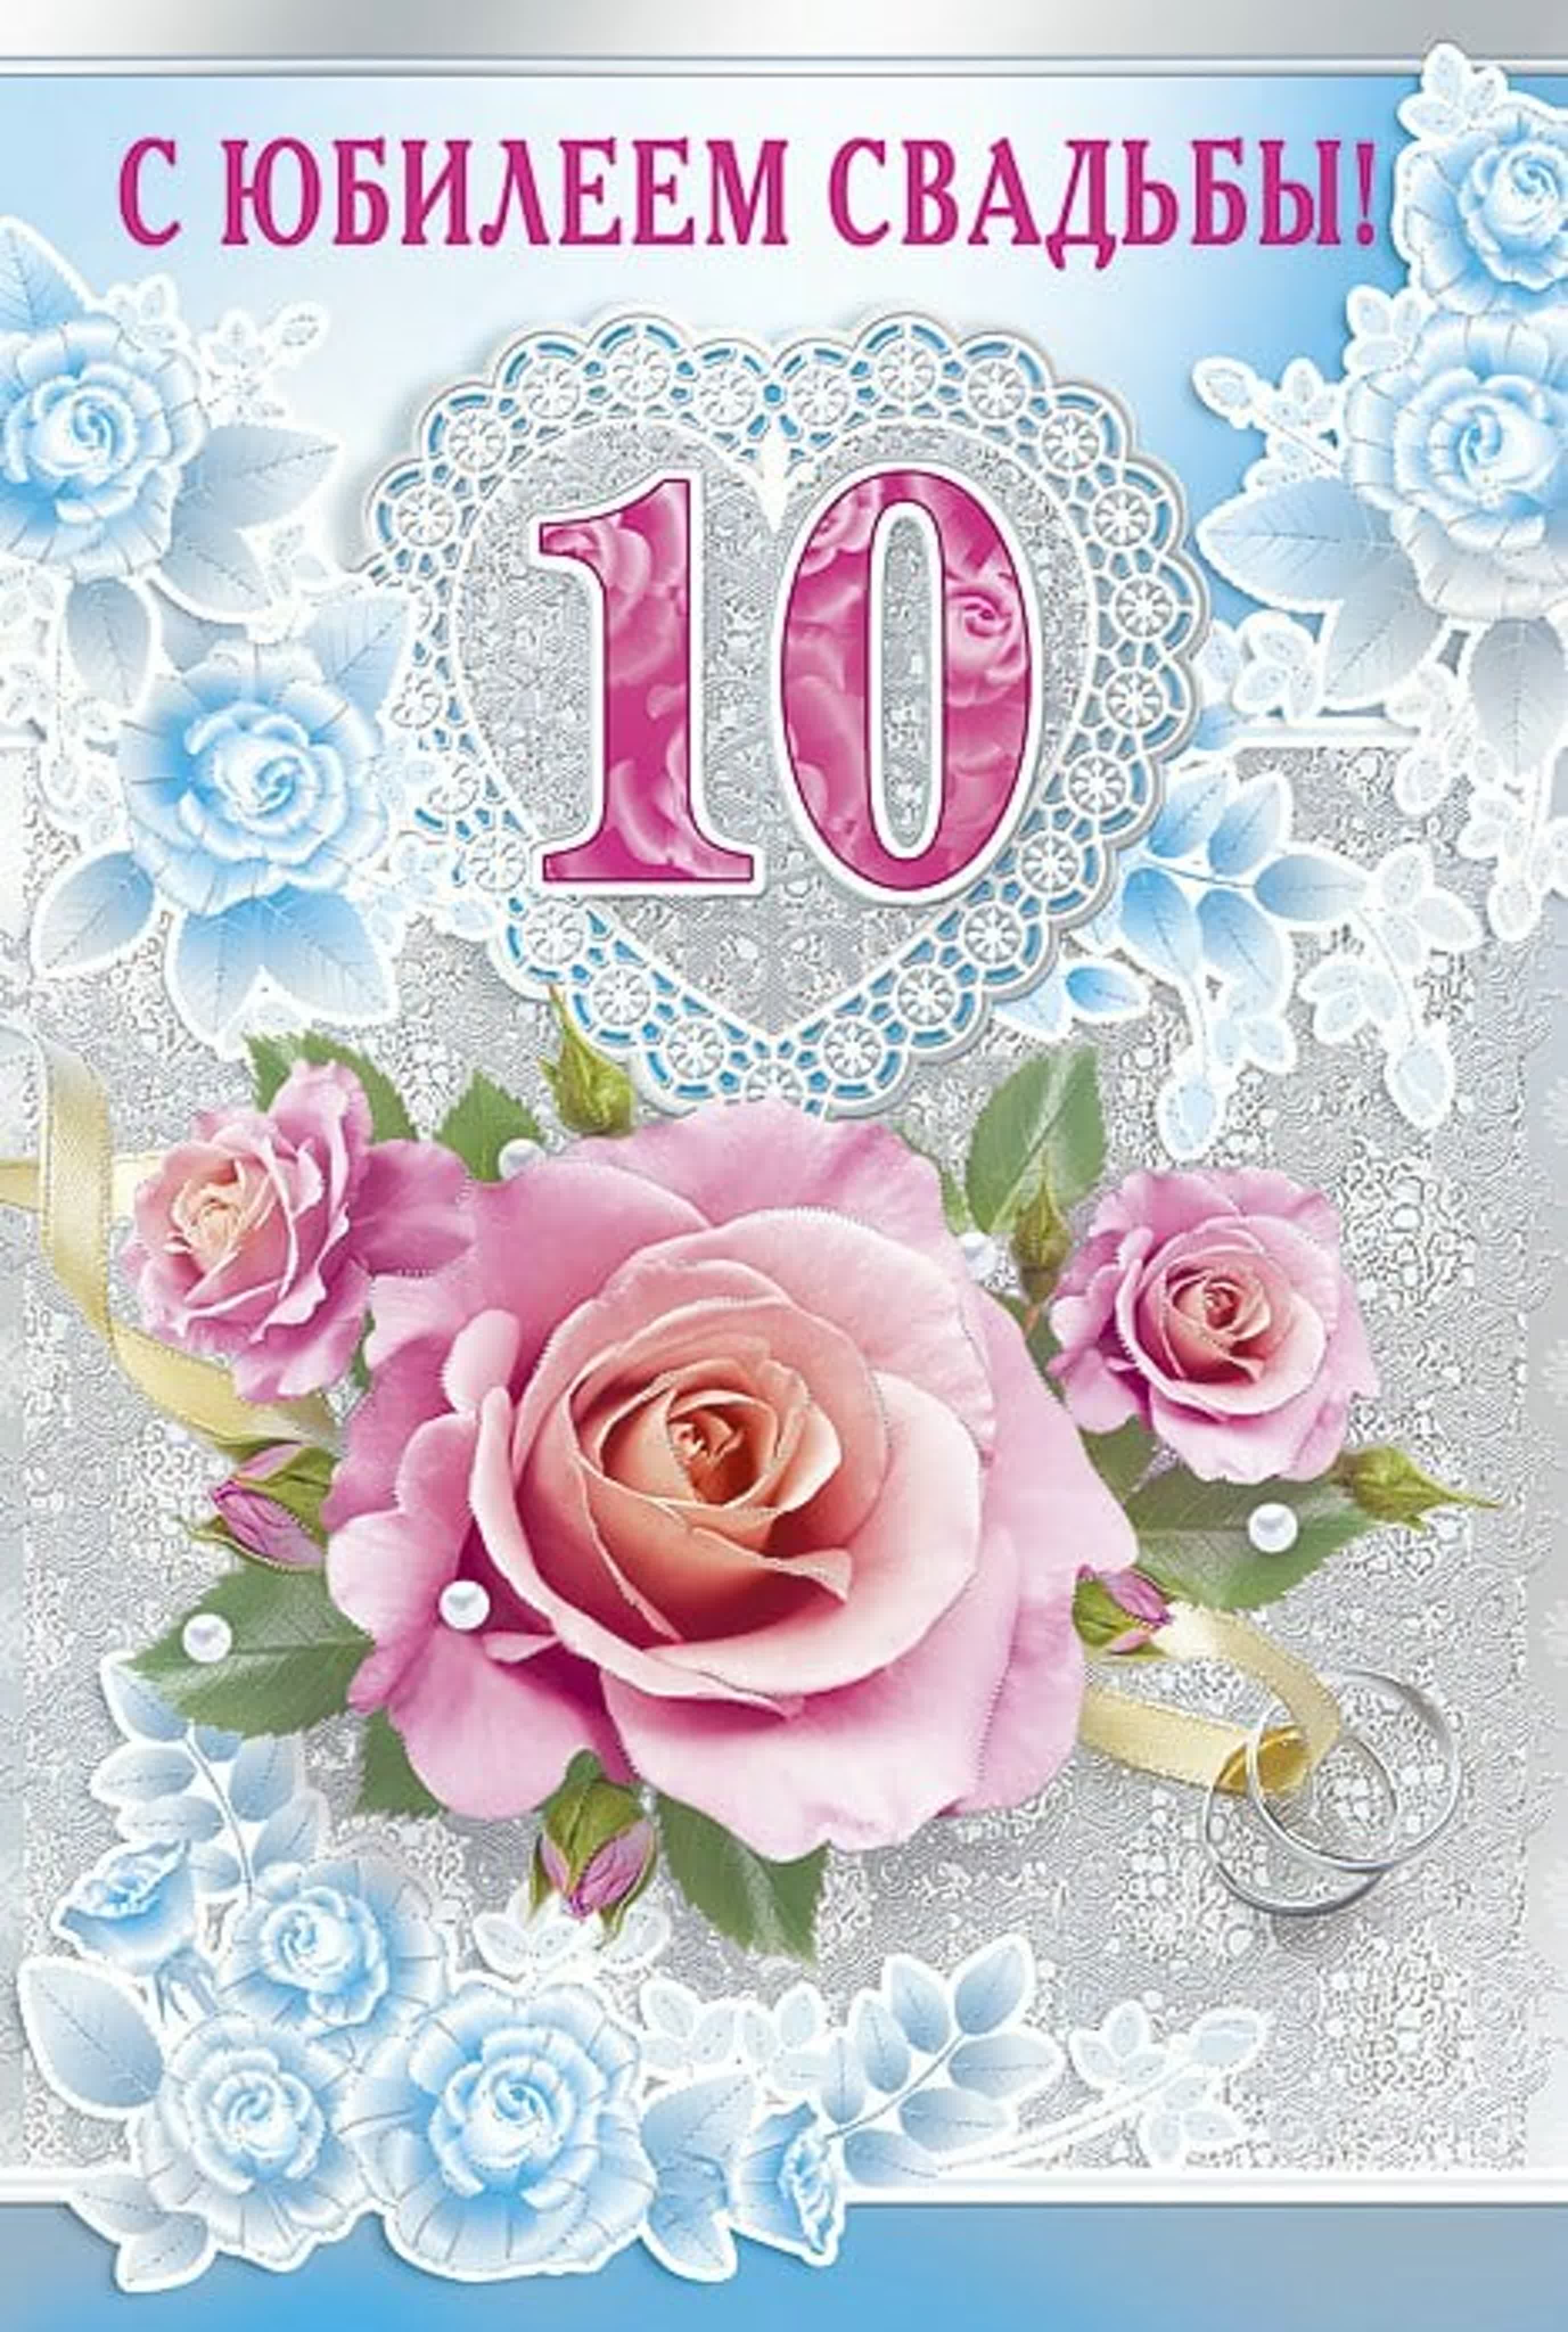 Юбилейная годовщина. 10 Лет свадьбы. 10 Лет свадьбы поздравления. С юбилеем свадьбы 10 лет. Розовая свадьба.